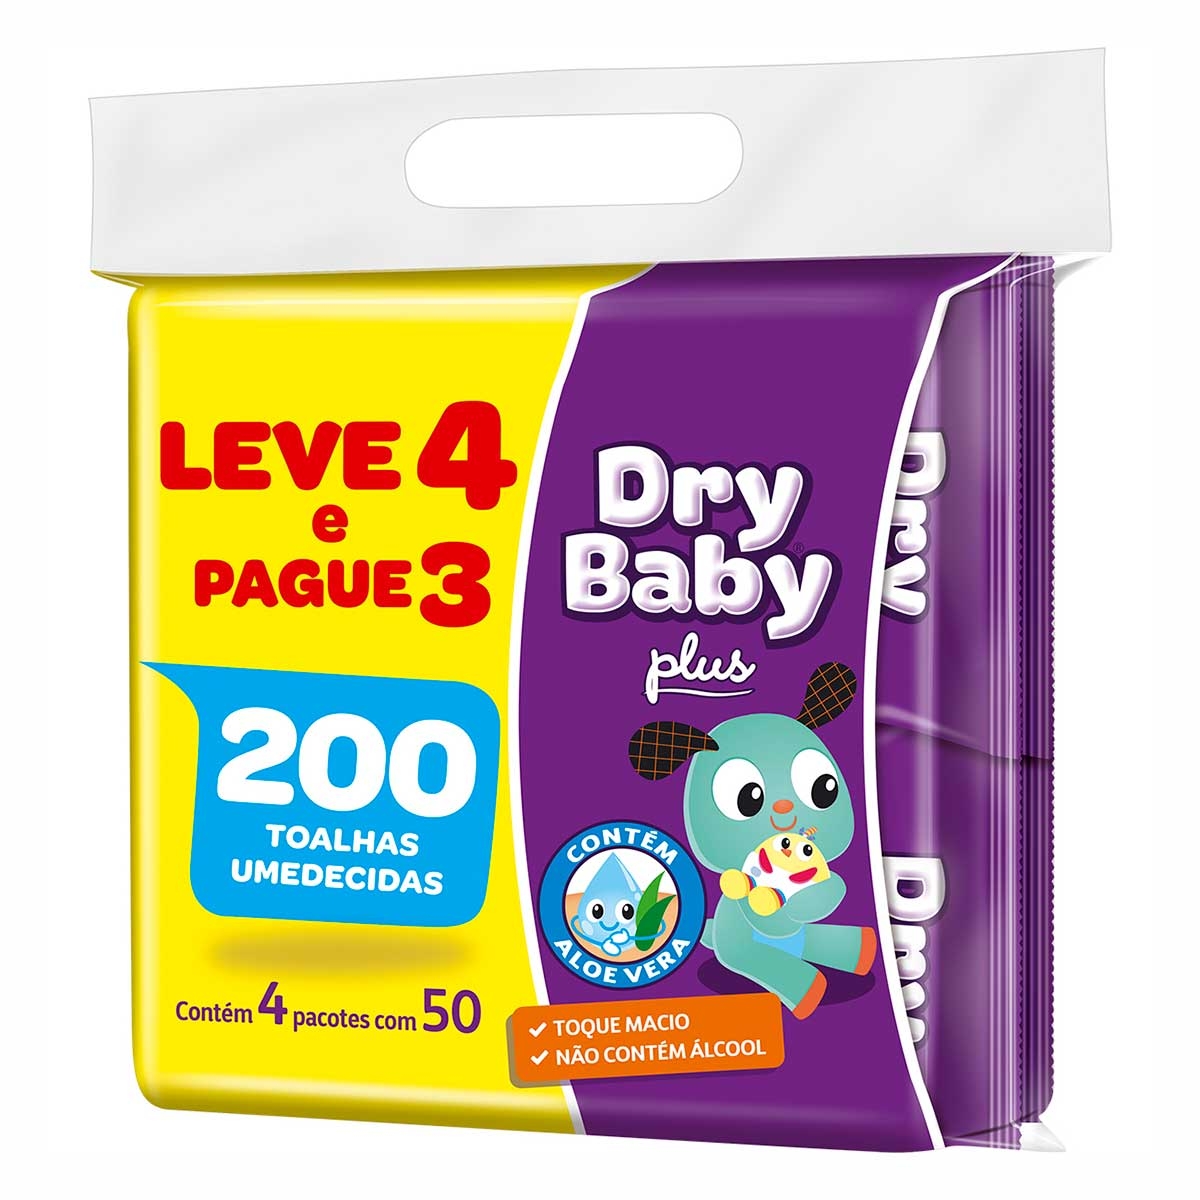 Toalha Umedecida Dry Baby com 200 Unidades 200 Unidades